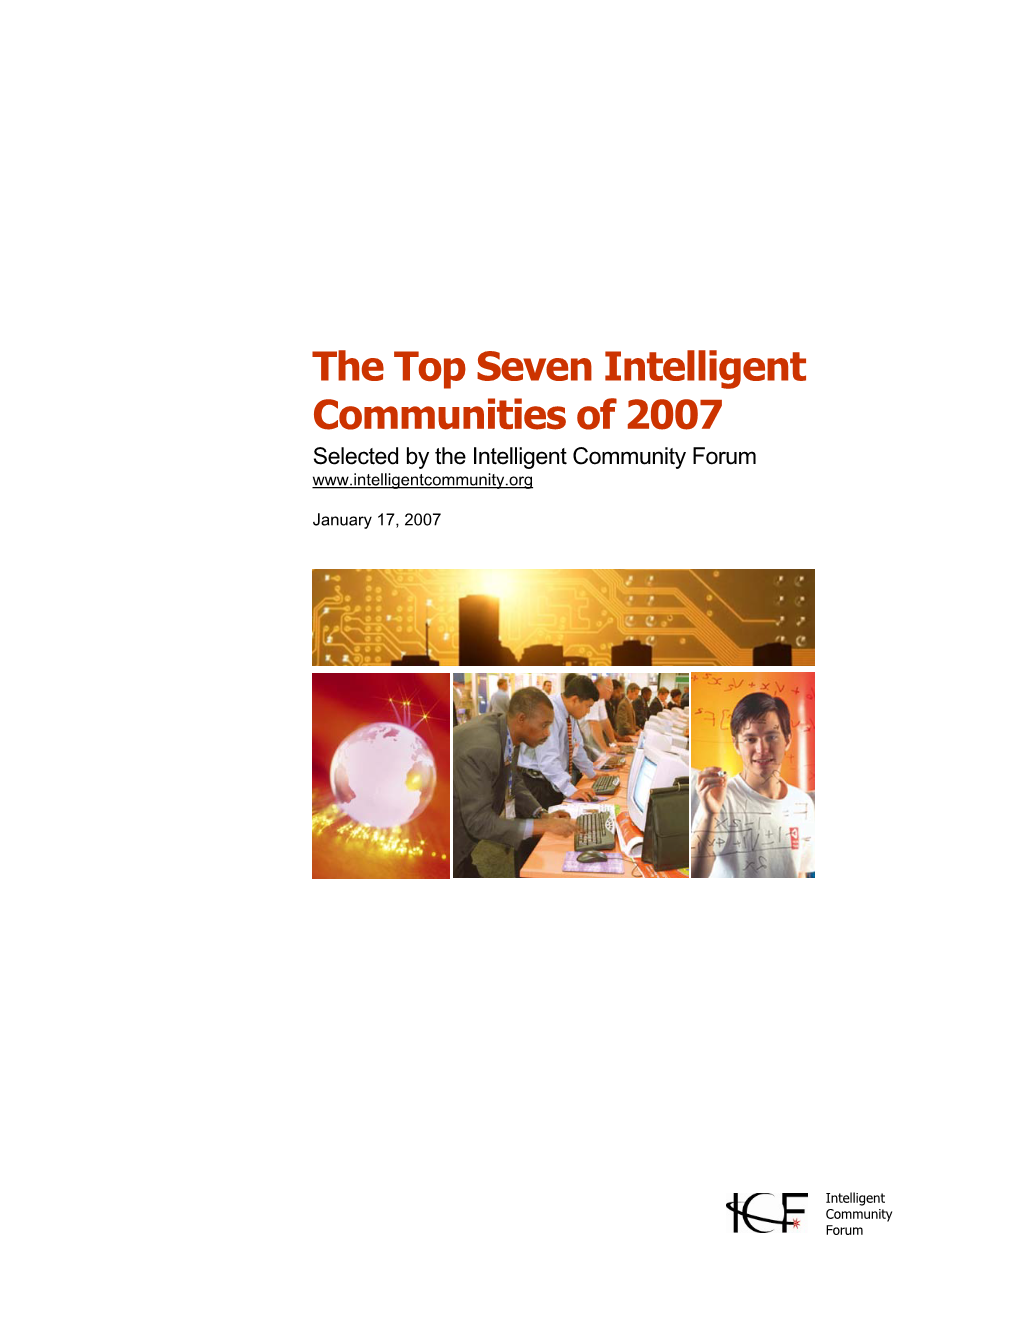 The Top Seven Intelligent Communities of 2007 Selected by the Intelligent Community Forum